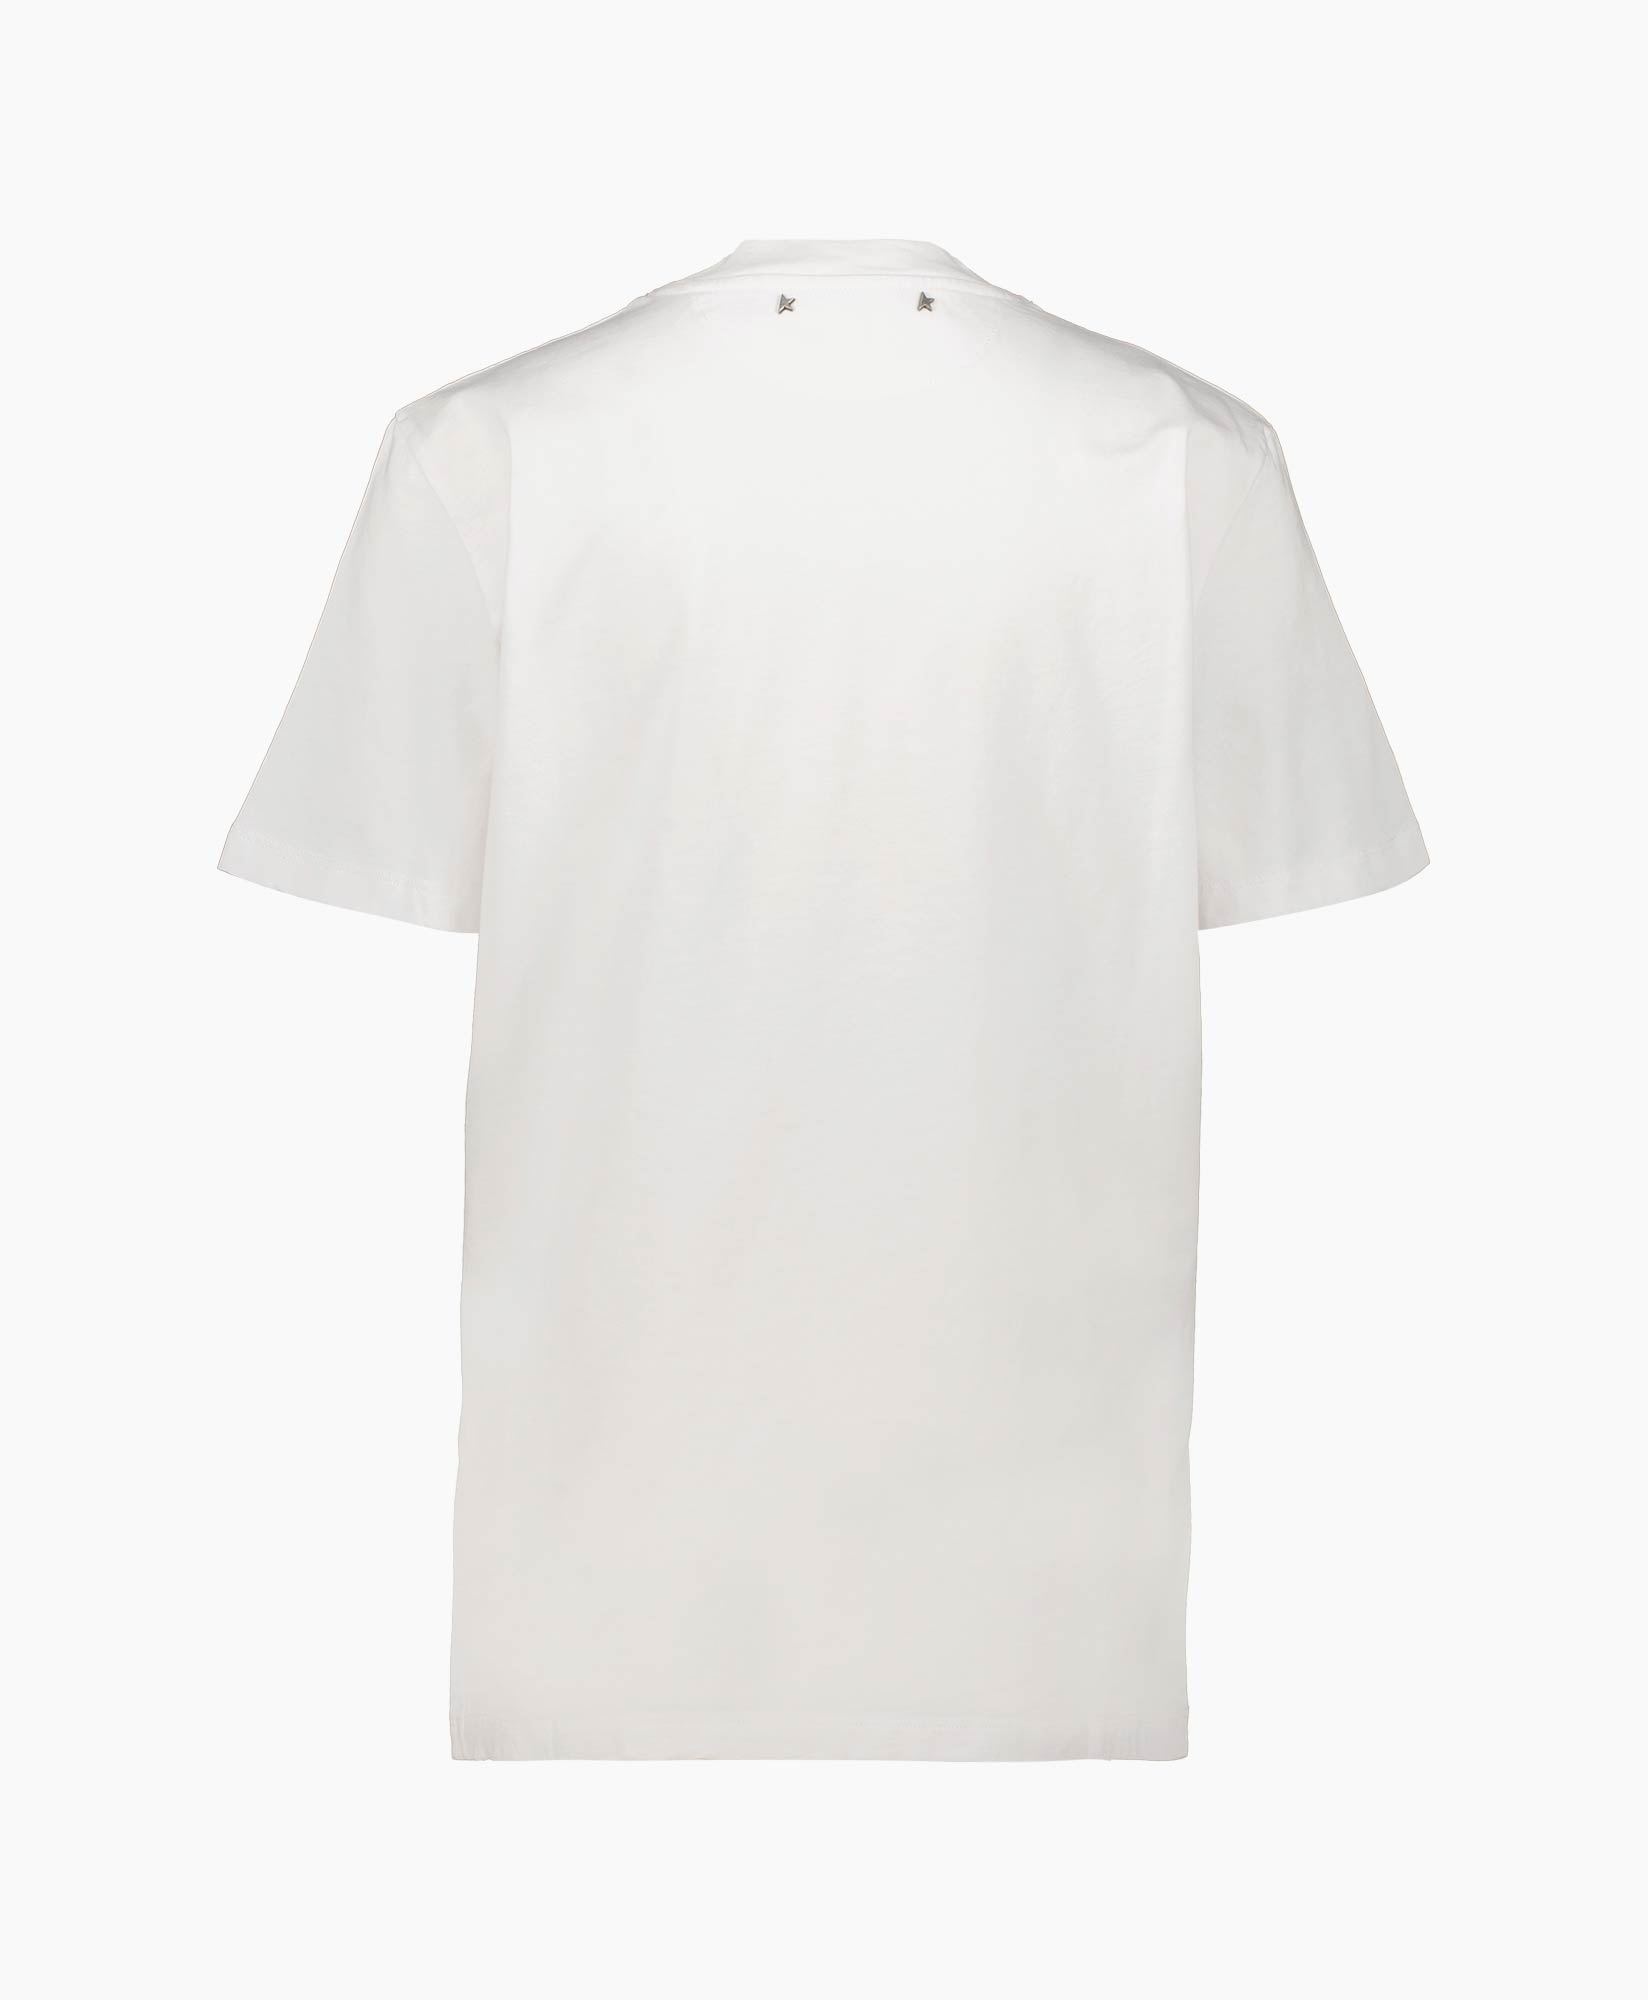 Golden Goose T-shirt Korte Mouw Gwp01220-1 Off White